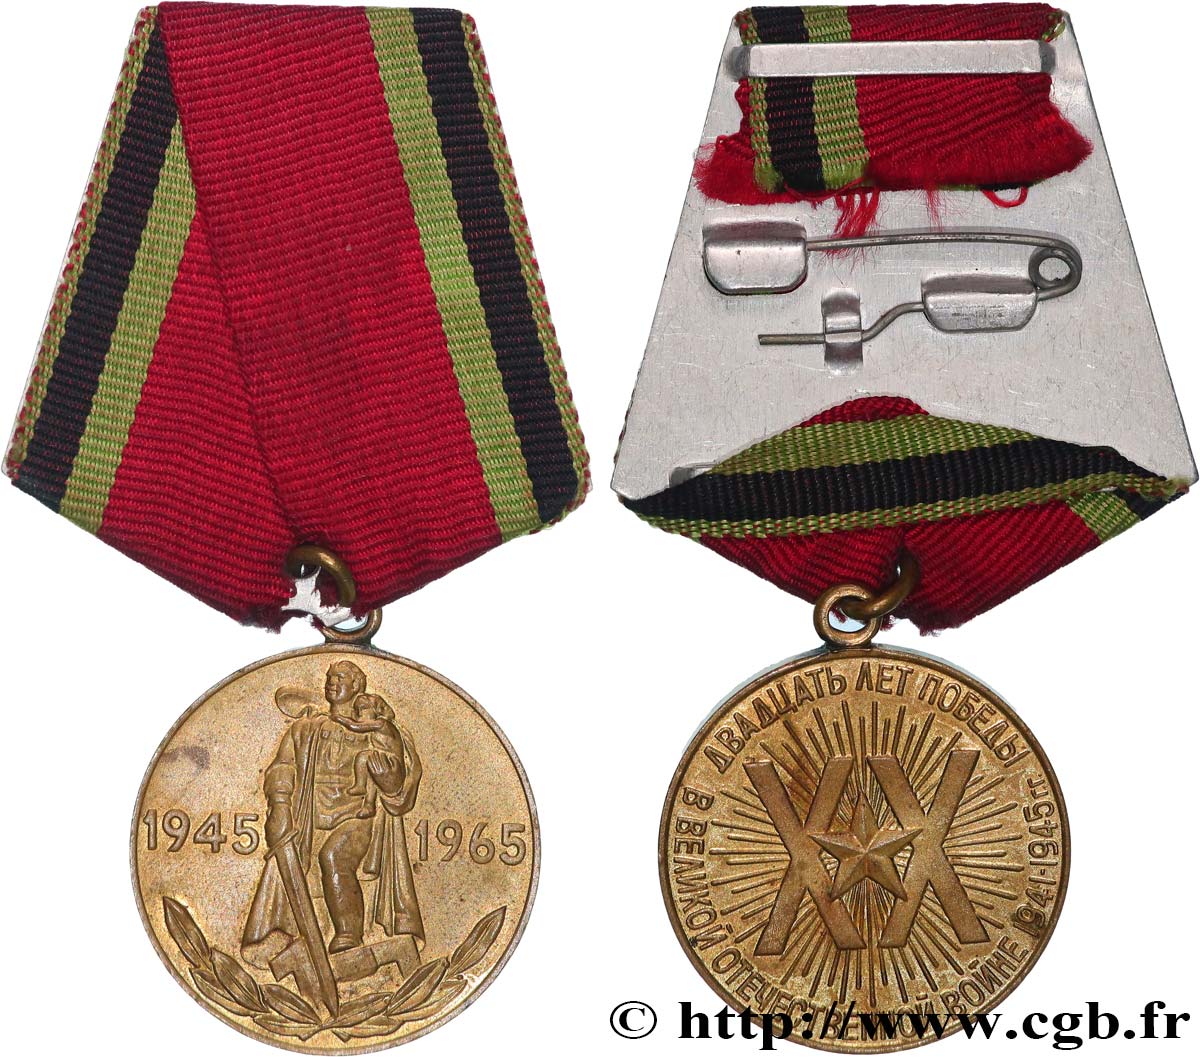 RUSSLAND - UdSSR Médaille, Vingt ans de victoire dans la Grande Guerre Patriotique de 1941-1945 SS